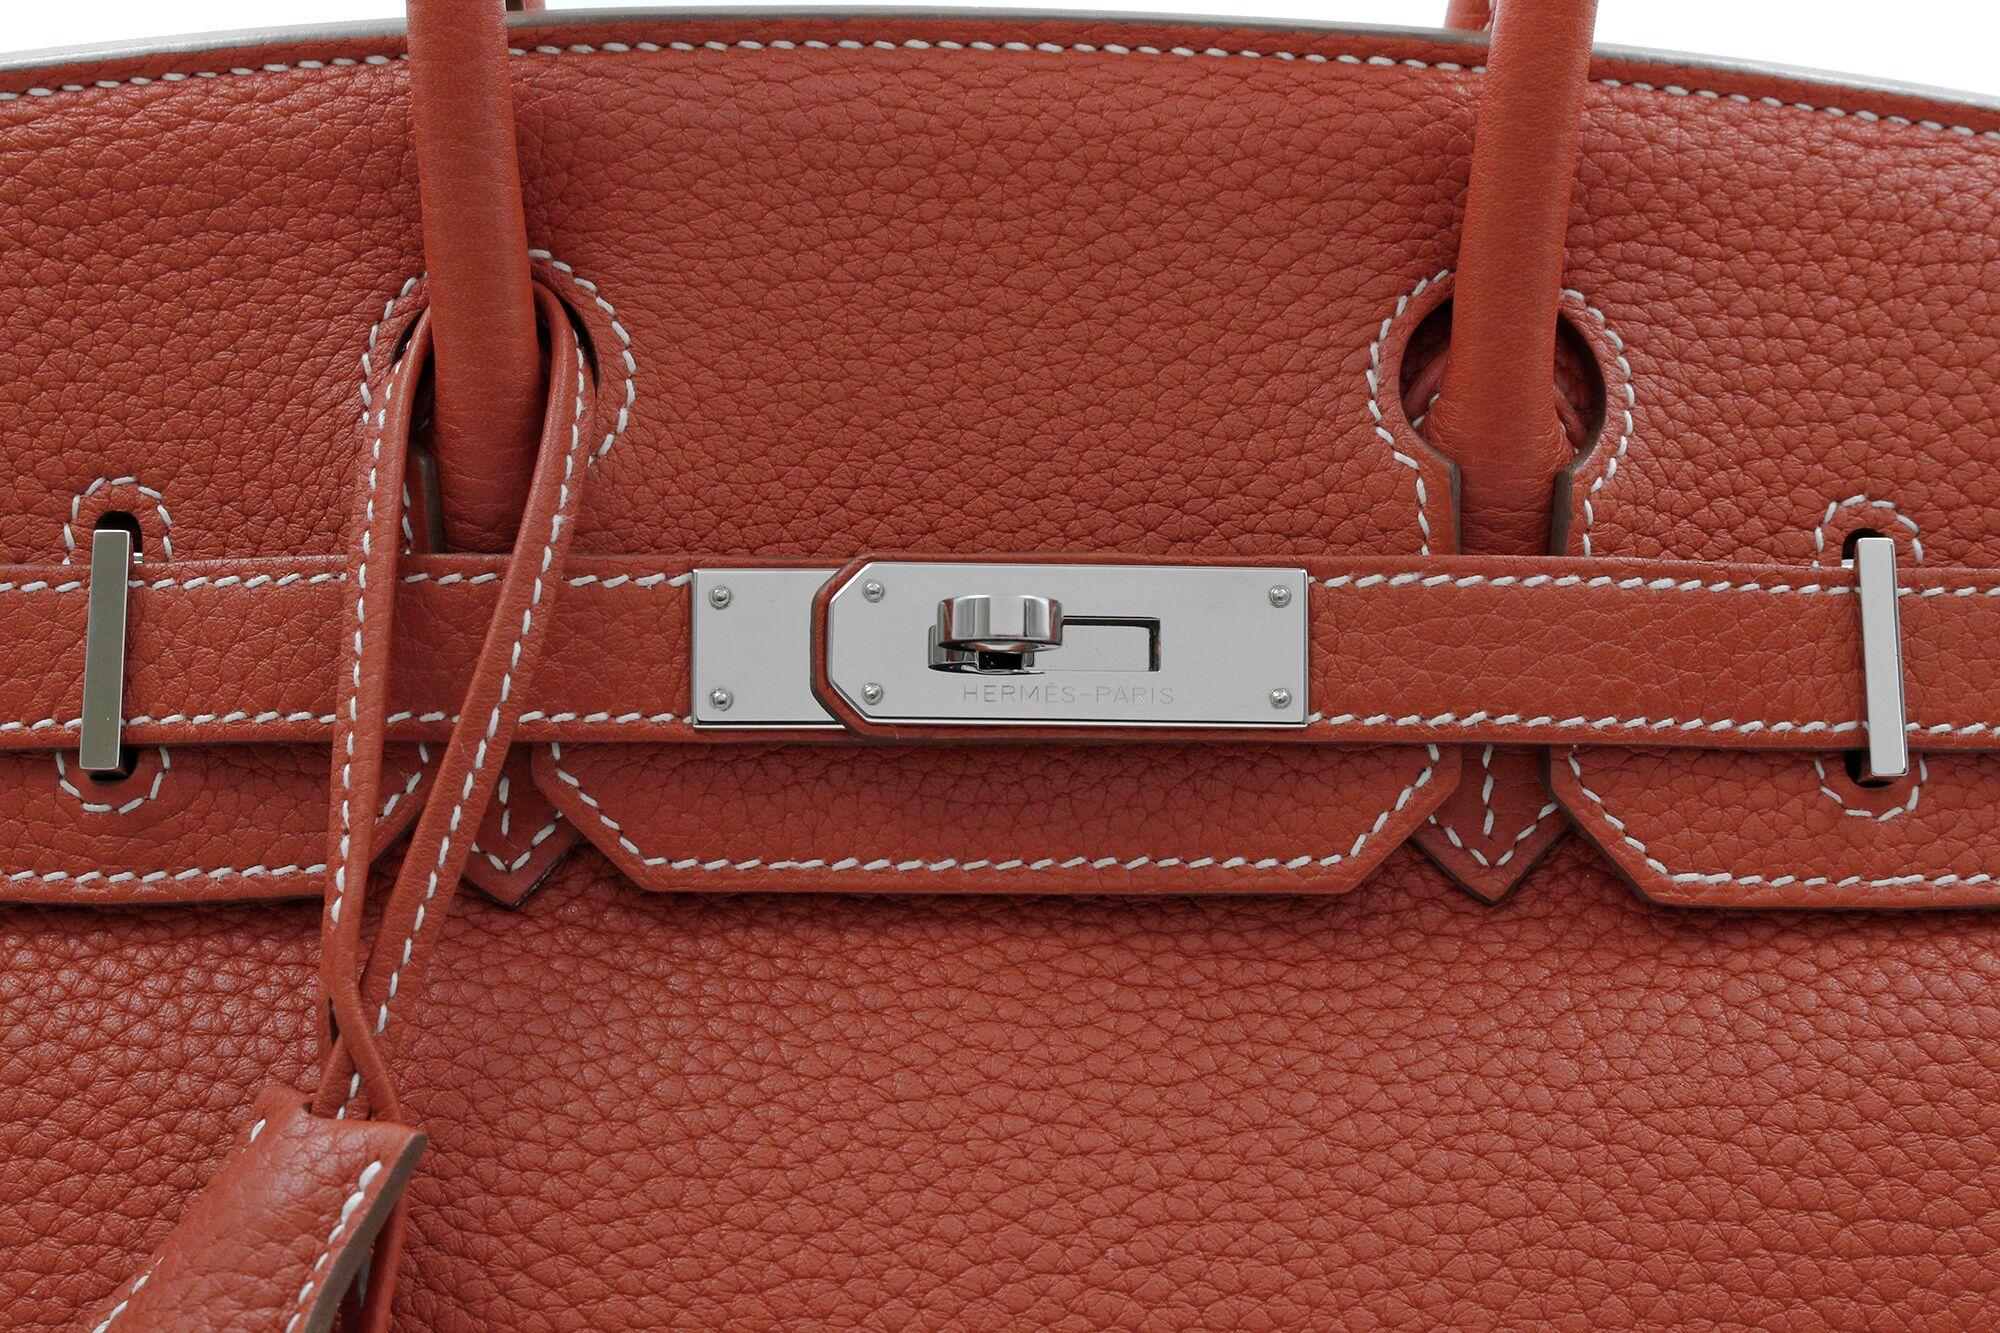 Hermès Birkin Limited Edition 30 Sanguine Orange/White Leather Satchel Bag 5